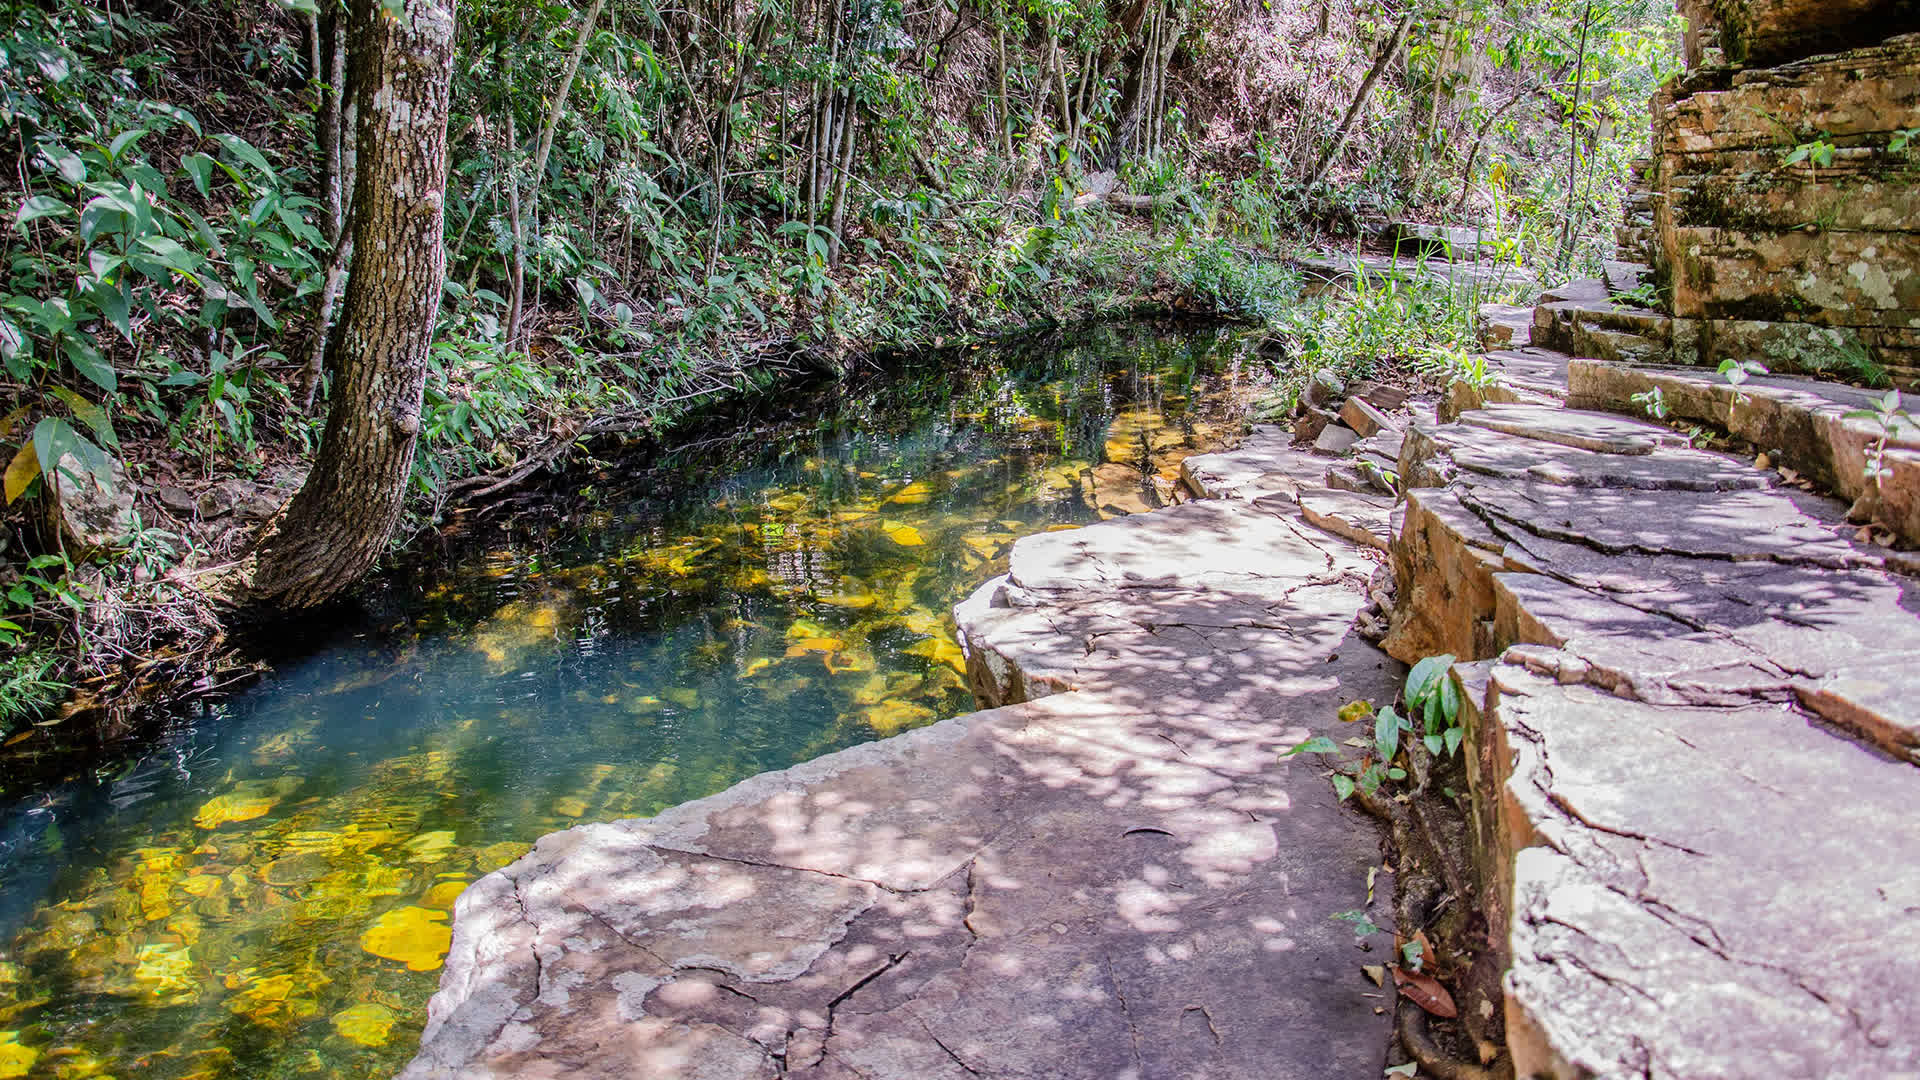 Piscina de pedra - Cachoeira do Rosário